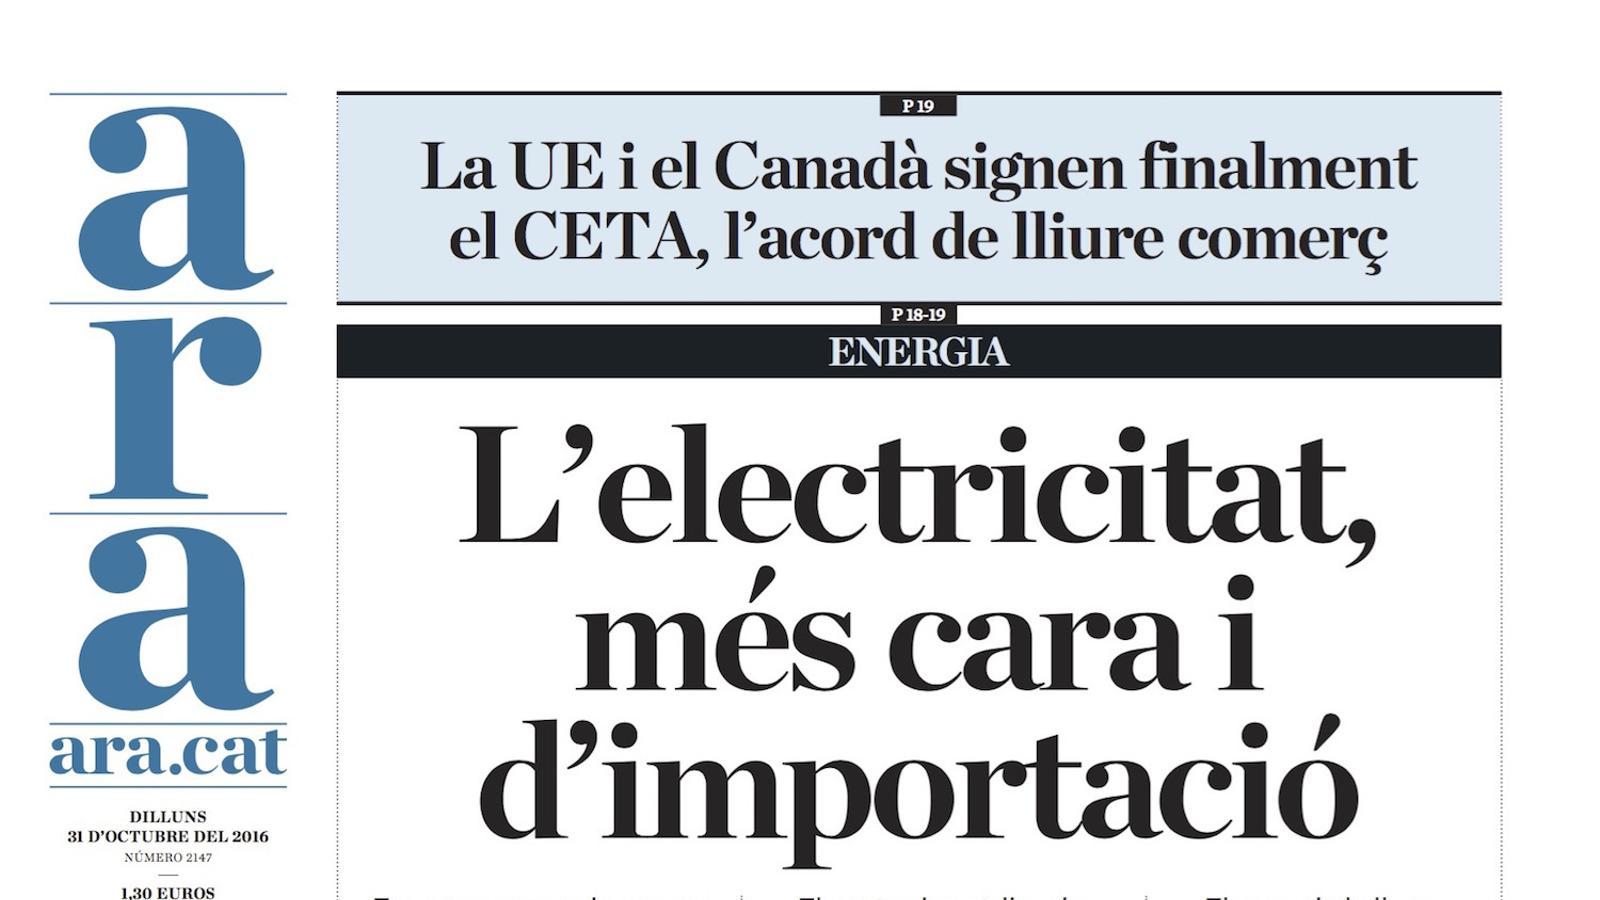 "L'electricitat, més cara i d'importació", portada de l'ARA